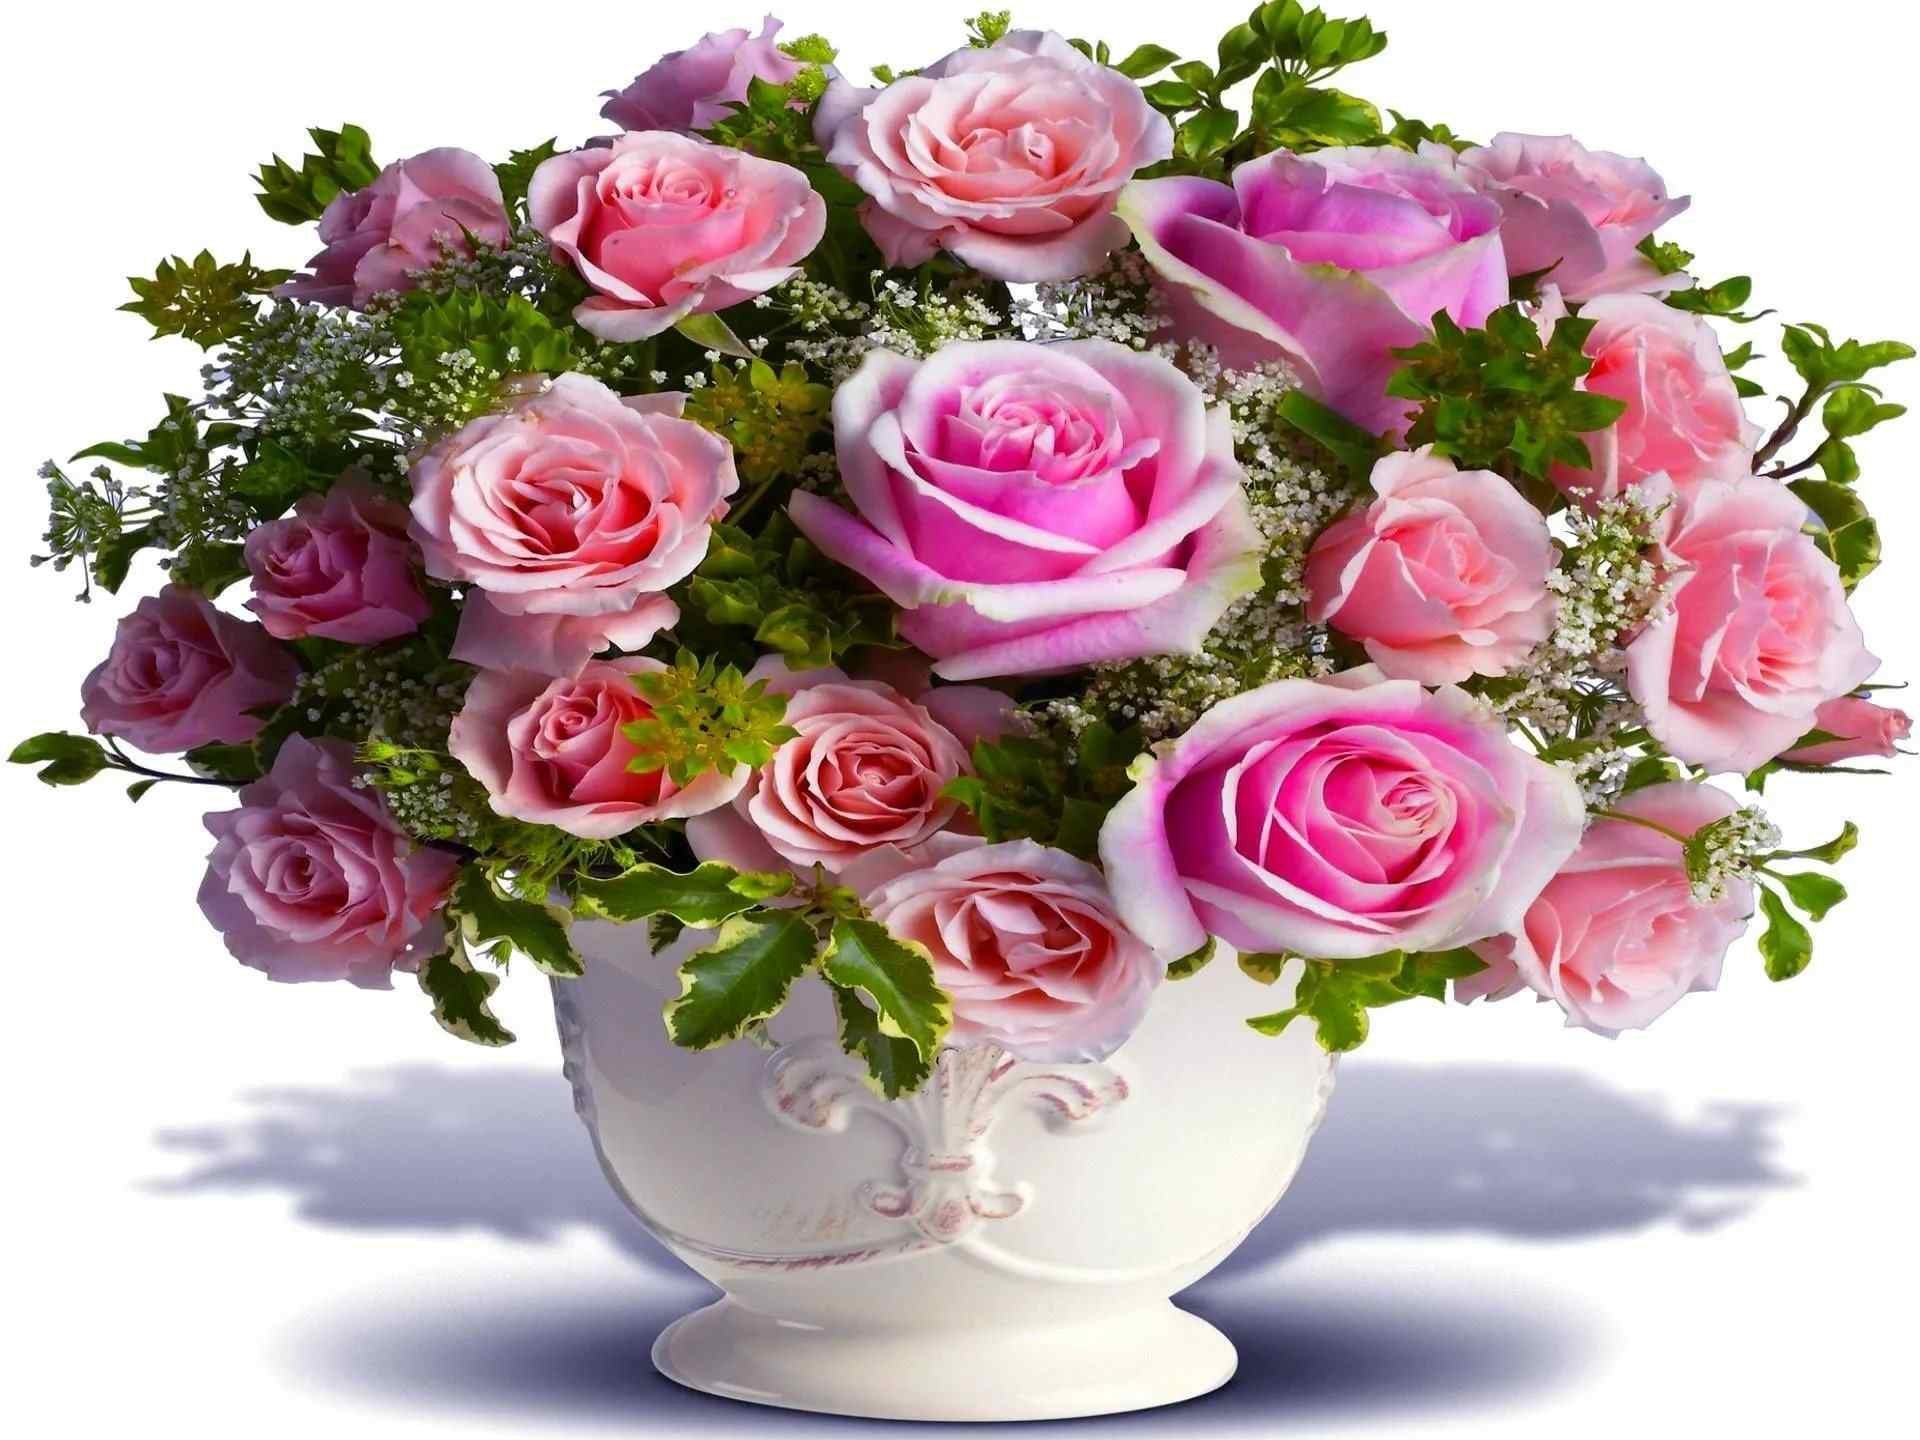 Картинка с цветами красивая хорошего дня. Красивый букет. Открытка "букет". Букет "день рождения". Букет роз с днем рождения.